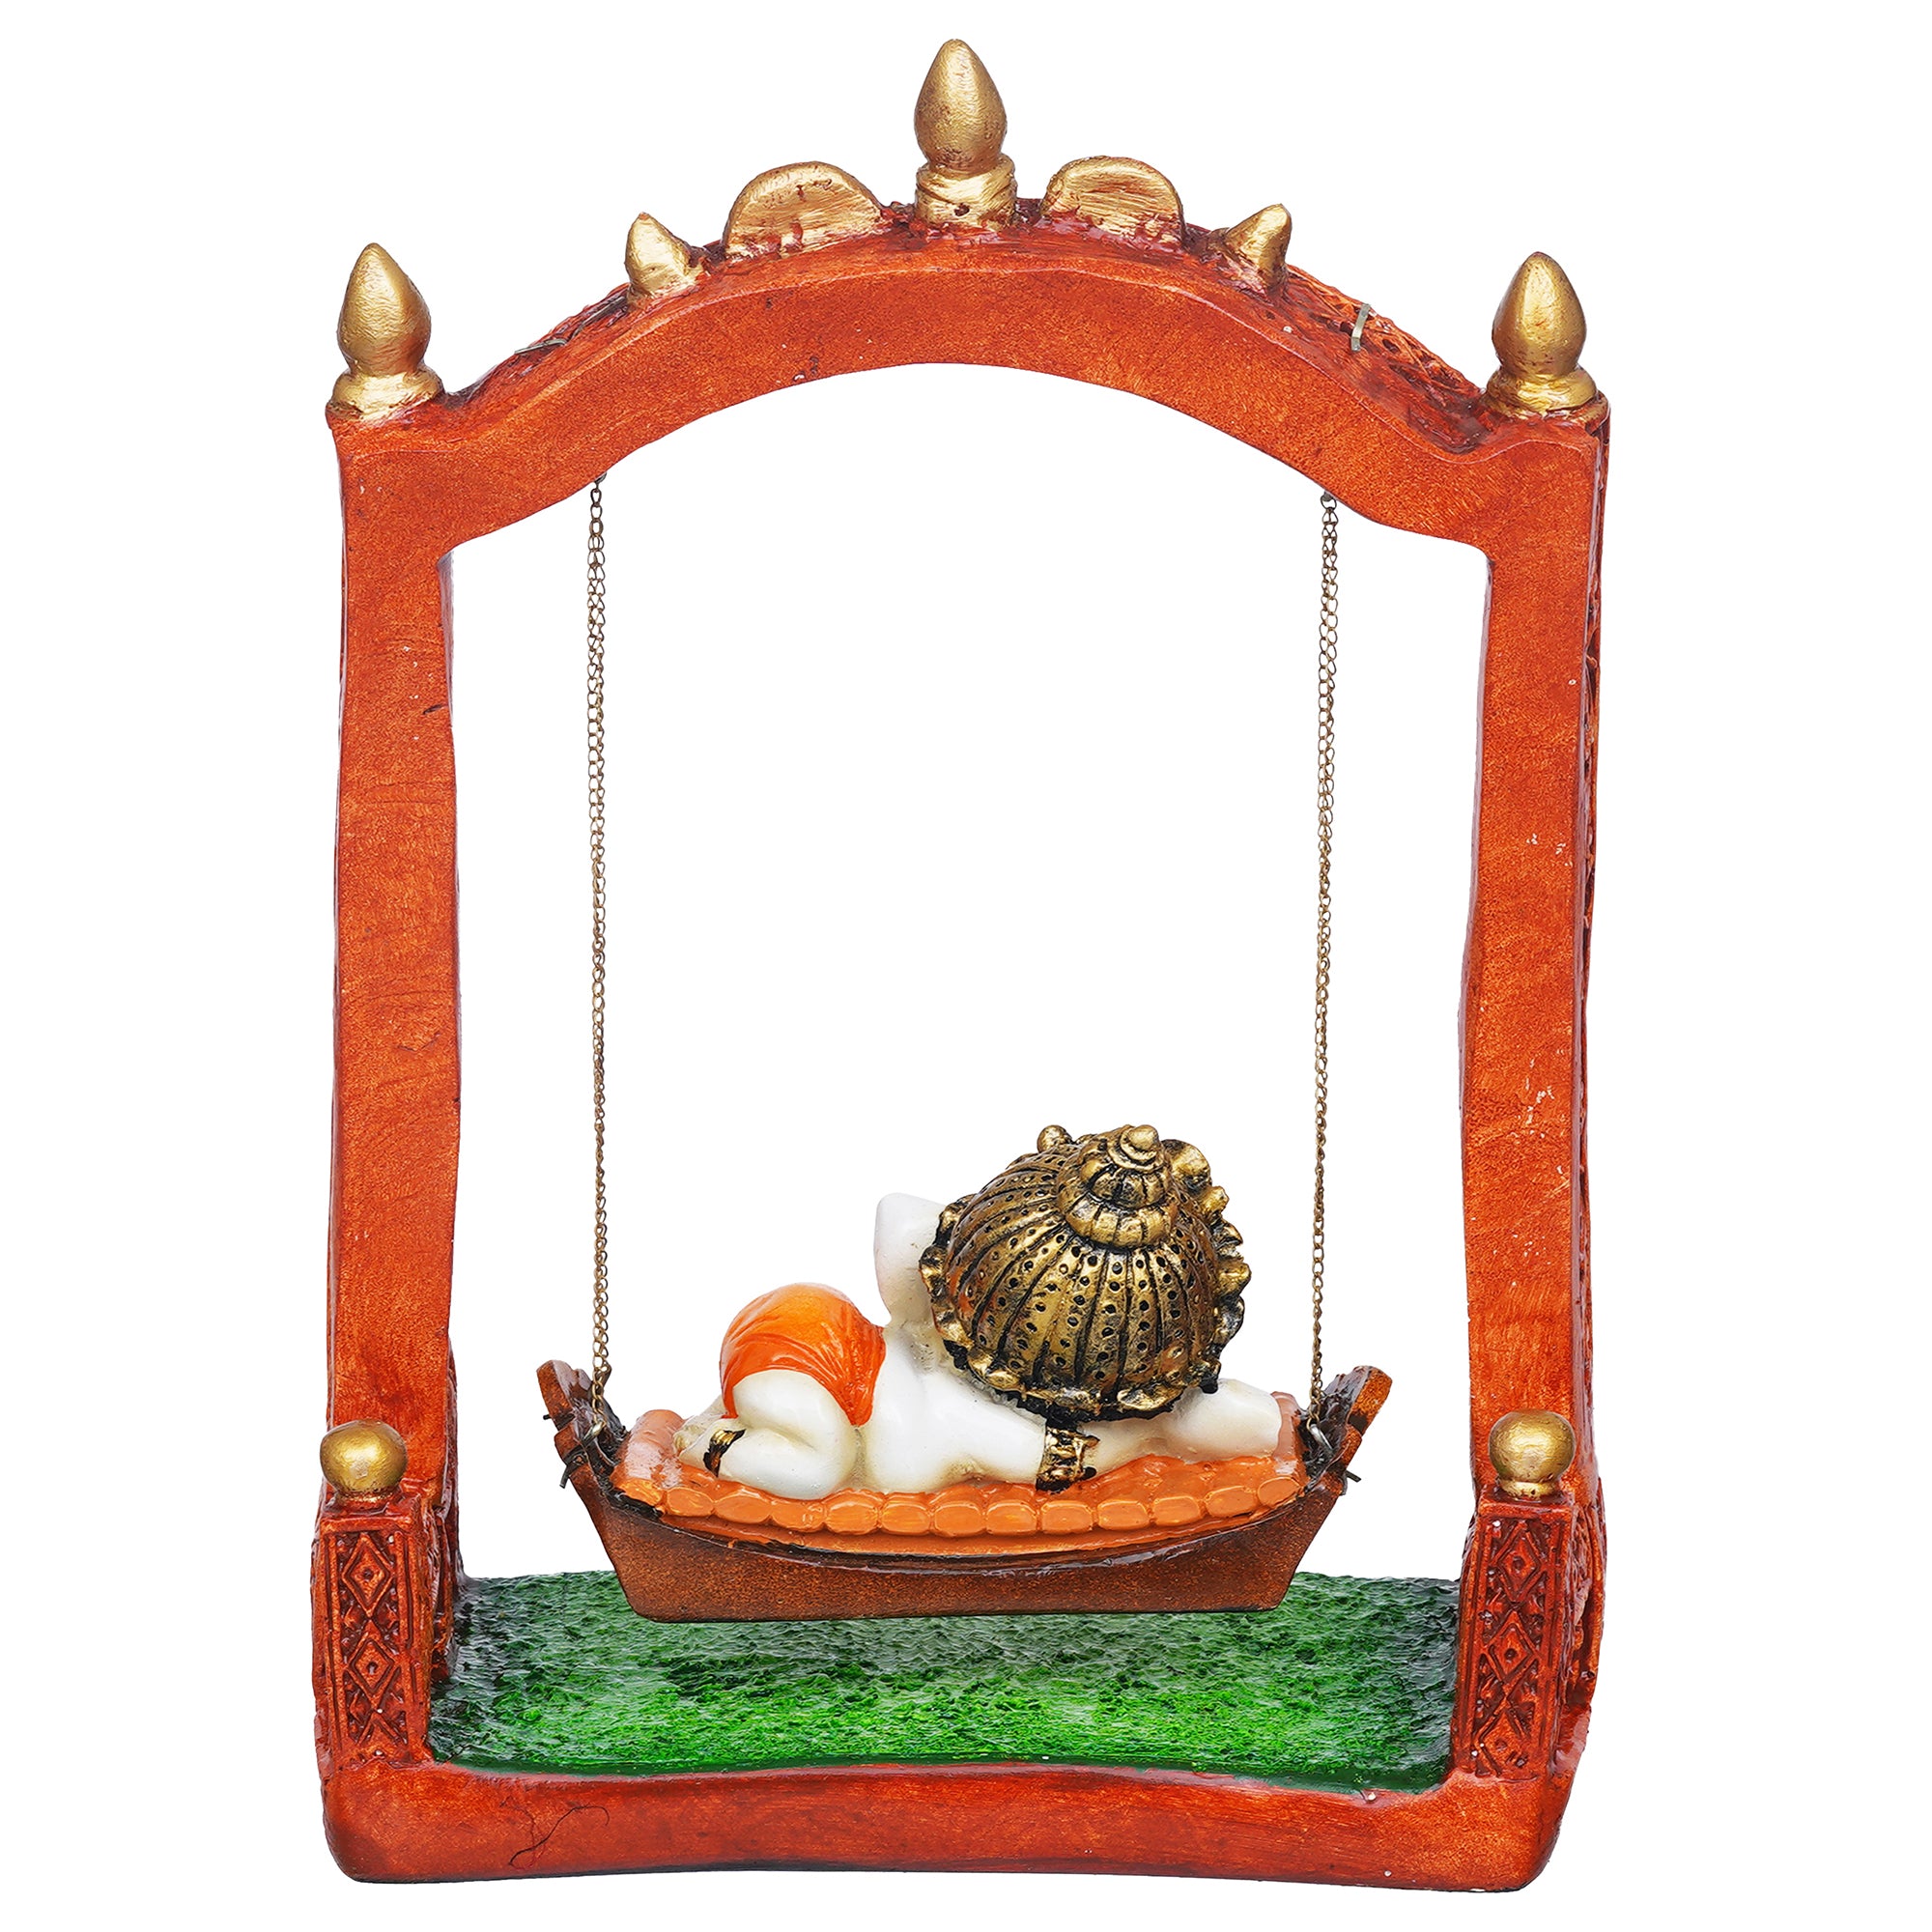 eCraftIndia Multicolor Polyresin Lord Ganesha Idol Resting On A Swing Decorative Showpiece 8